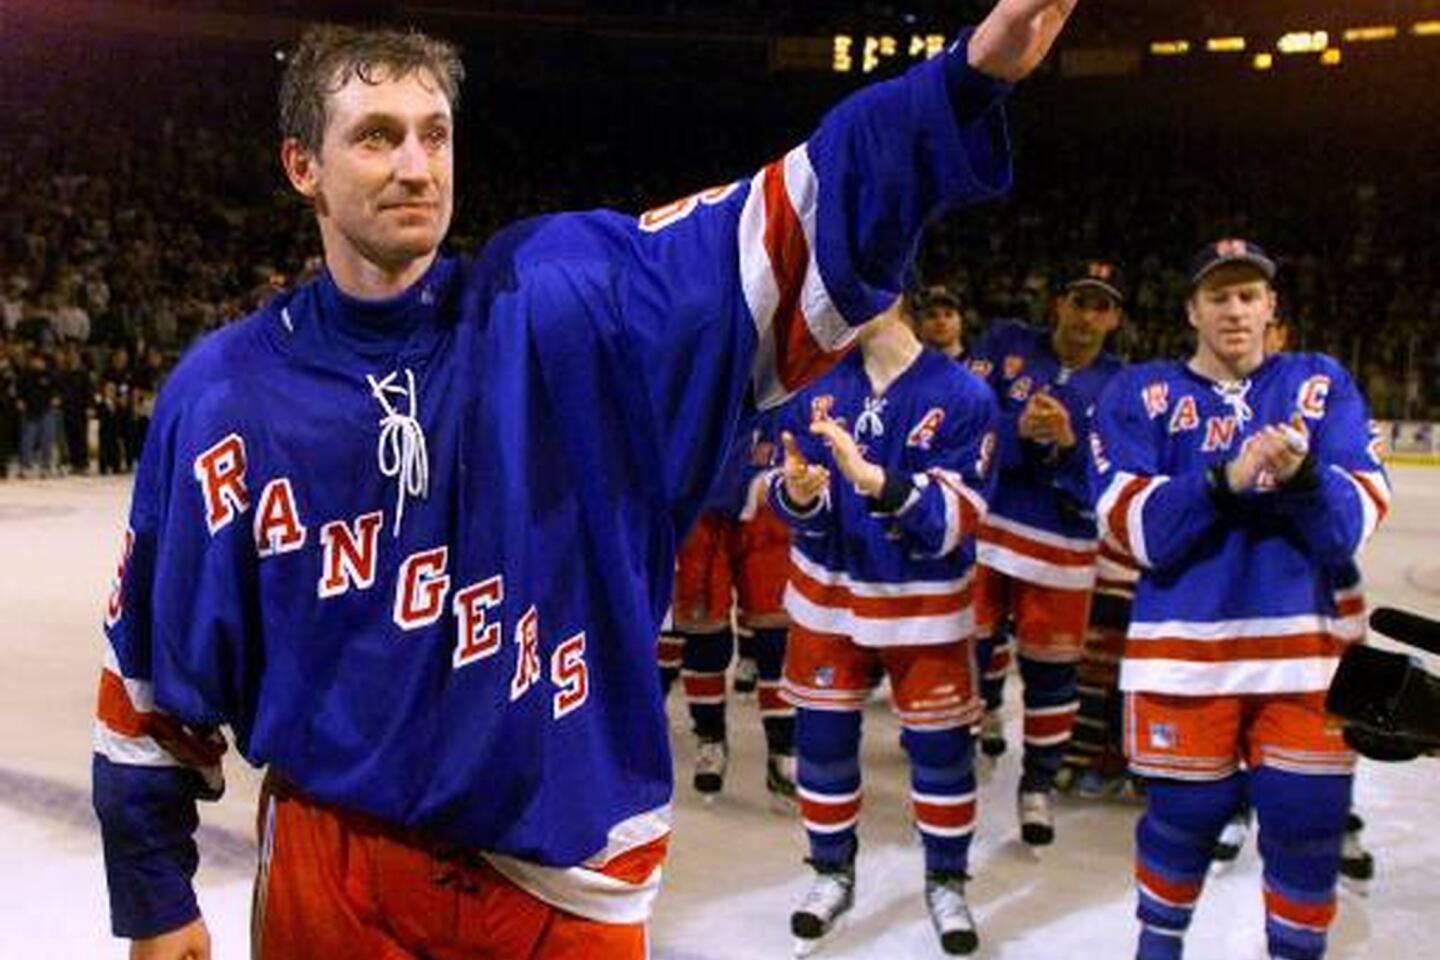 Wane Gretzky farewell